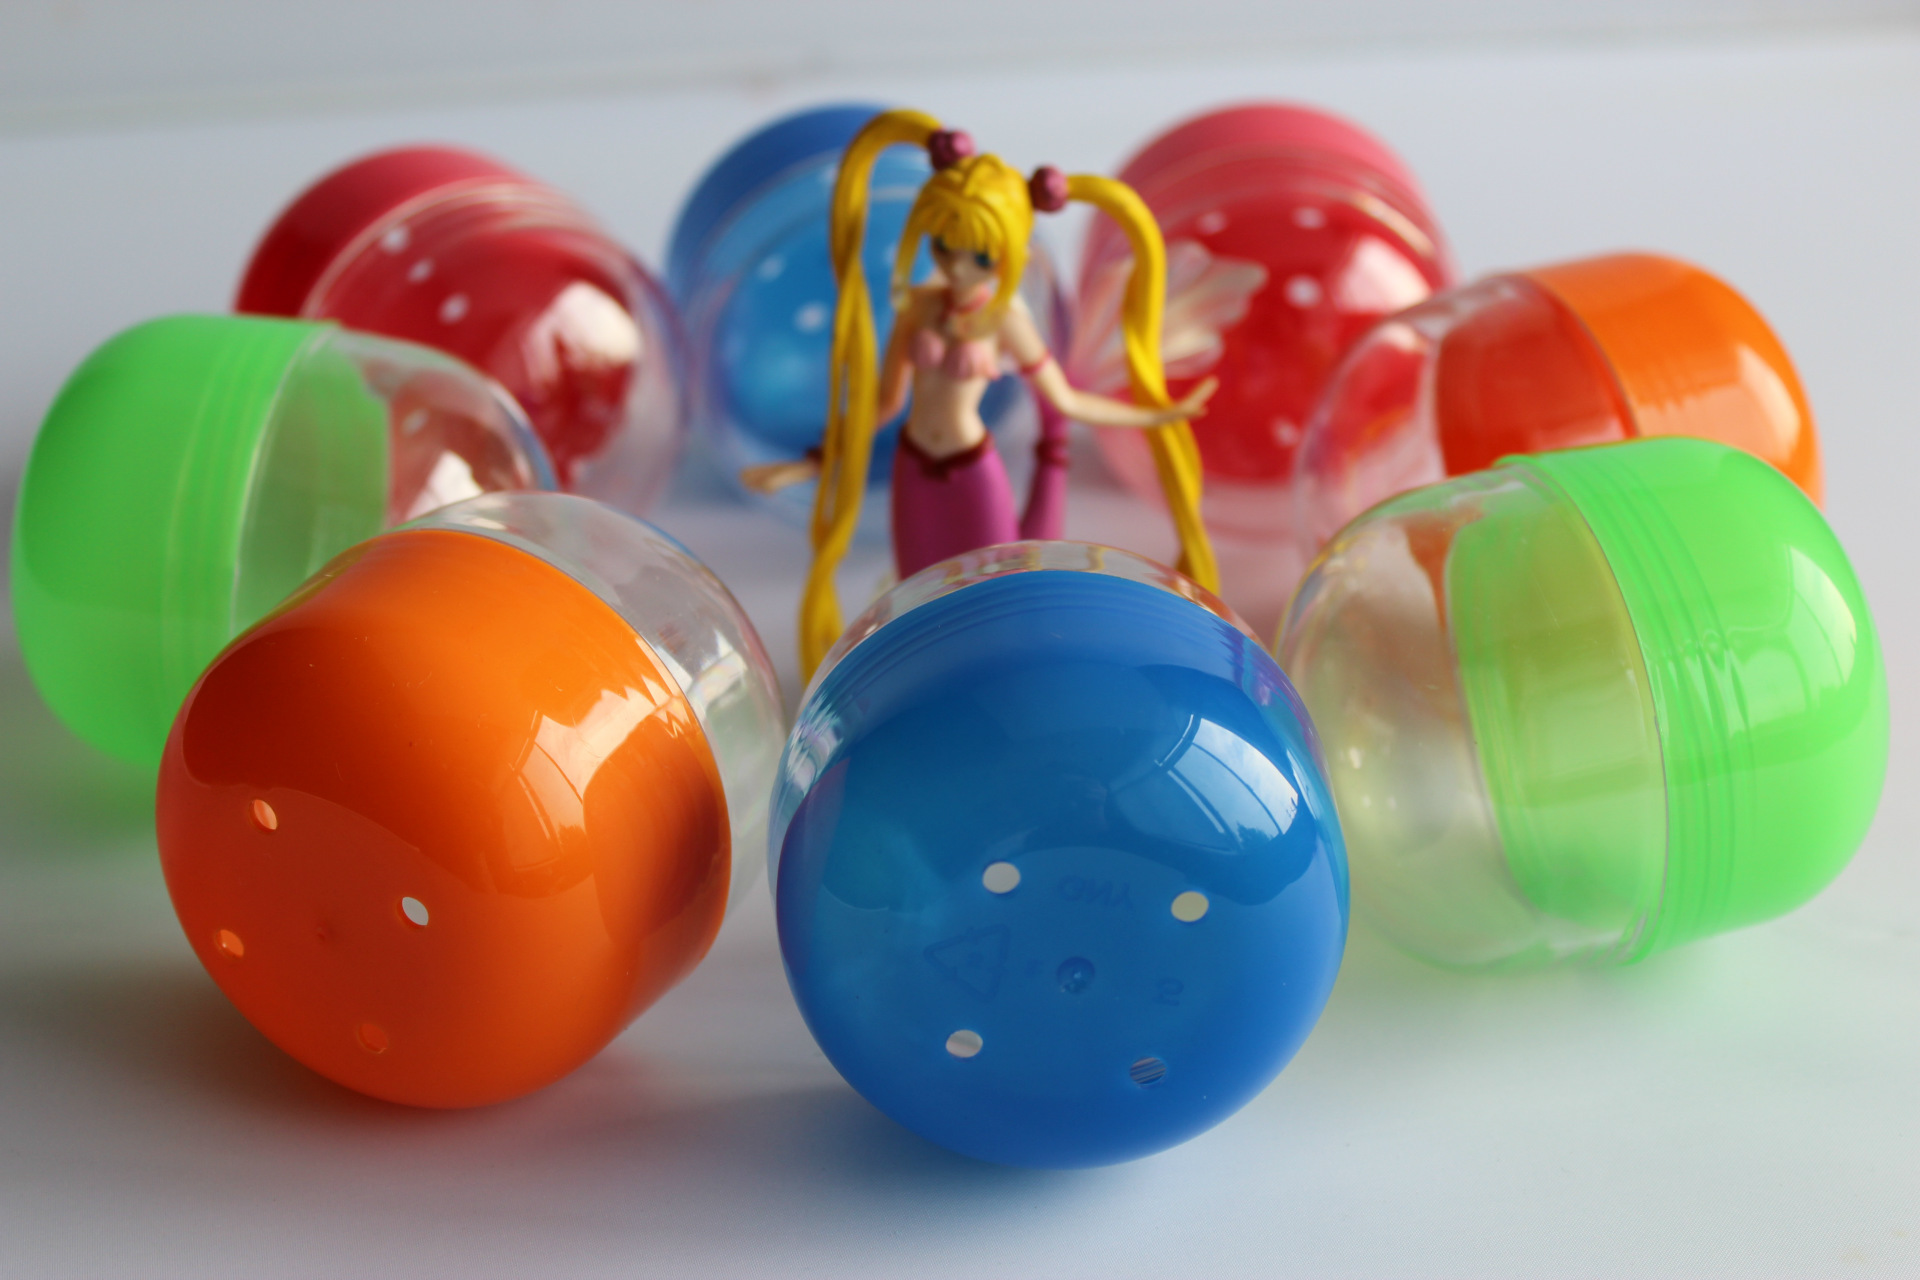 扭蛋蛋壳 儿童玩具扭蛋壳 彩球蛋壳,一元机玩具 扭蛋机专用蛋壳